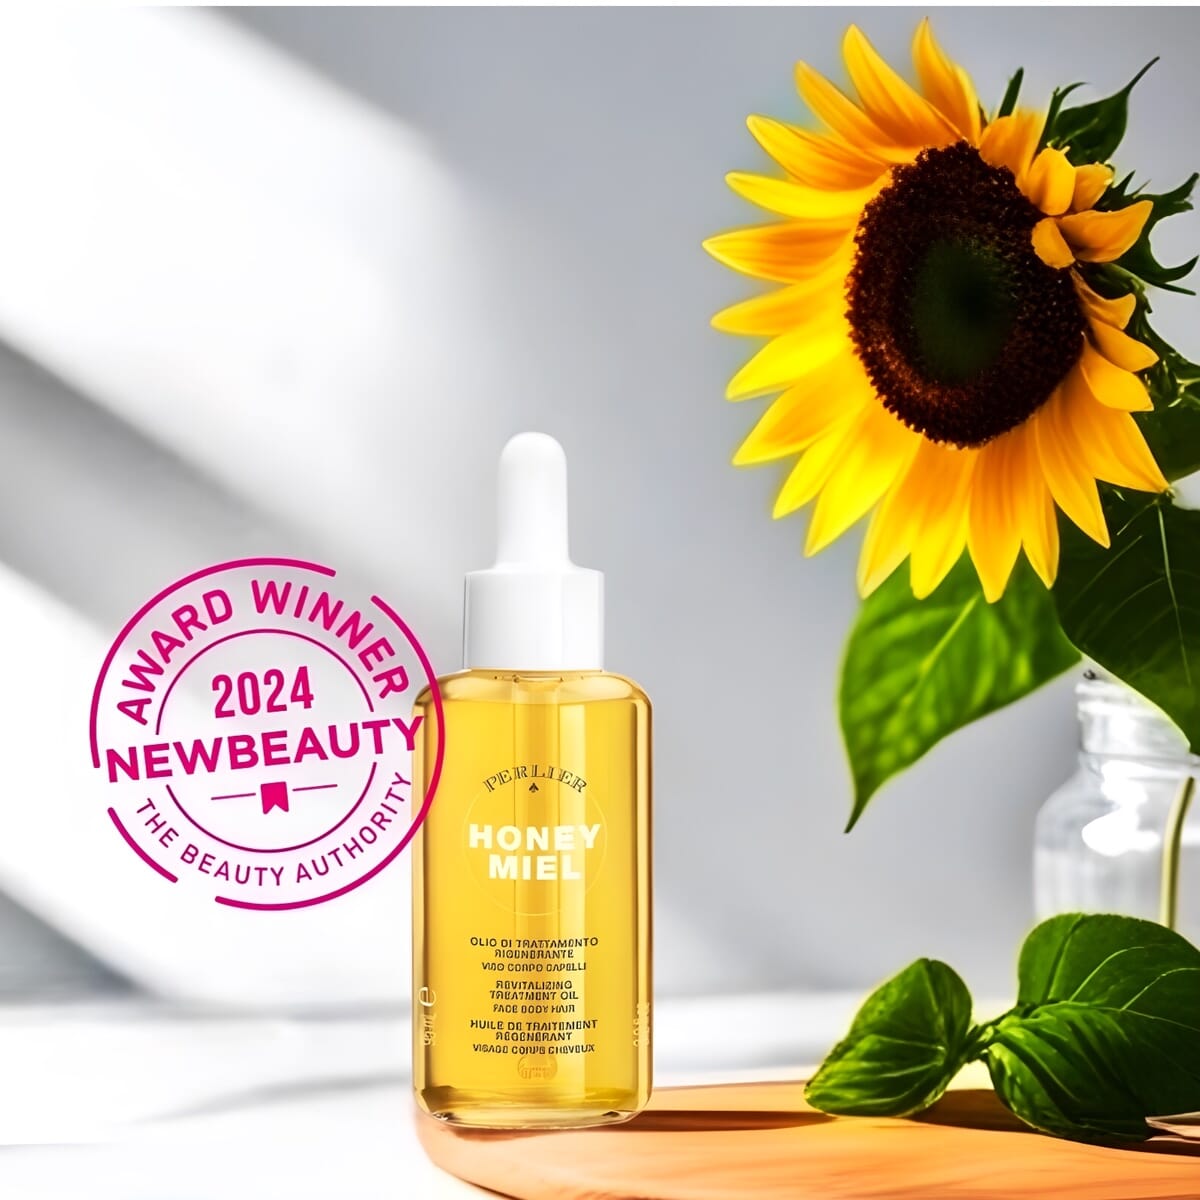 Perlier Honey Revitalizing Oil Winner of New Beauty 2024 Beauty Award - Best Multitasking Oil